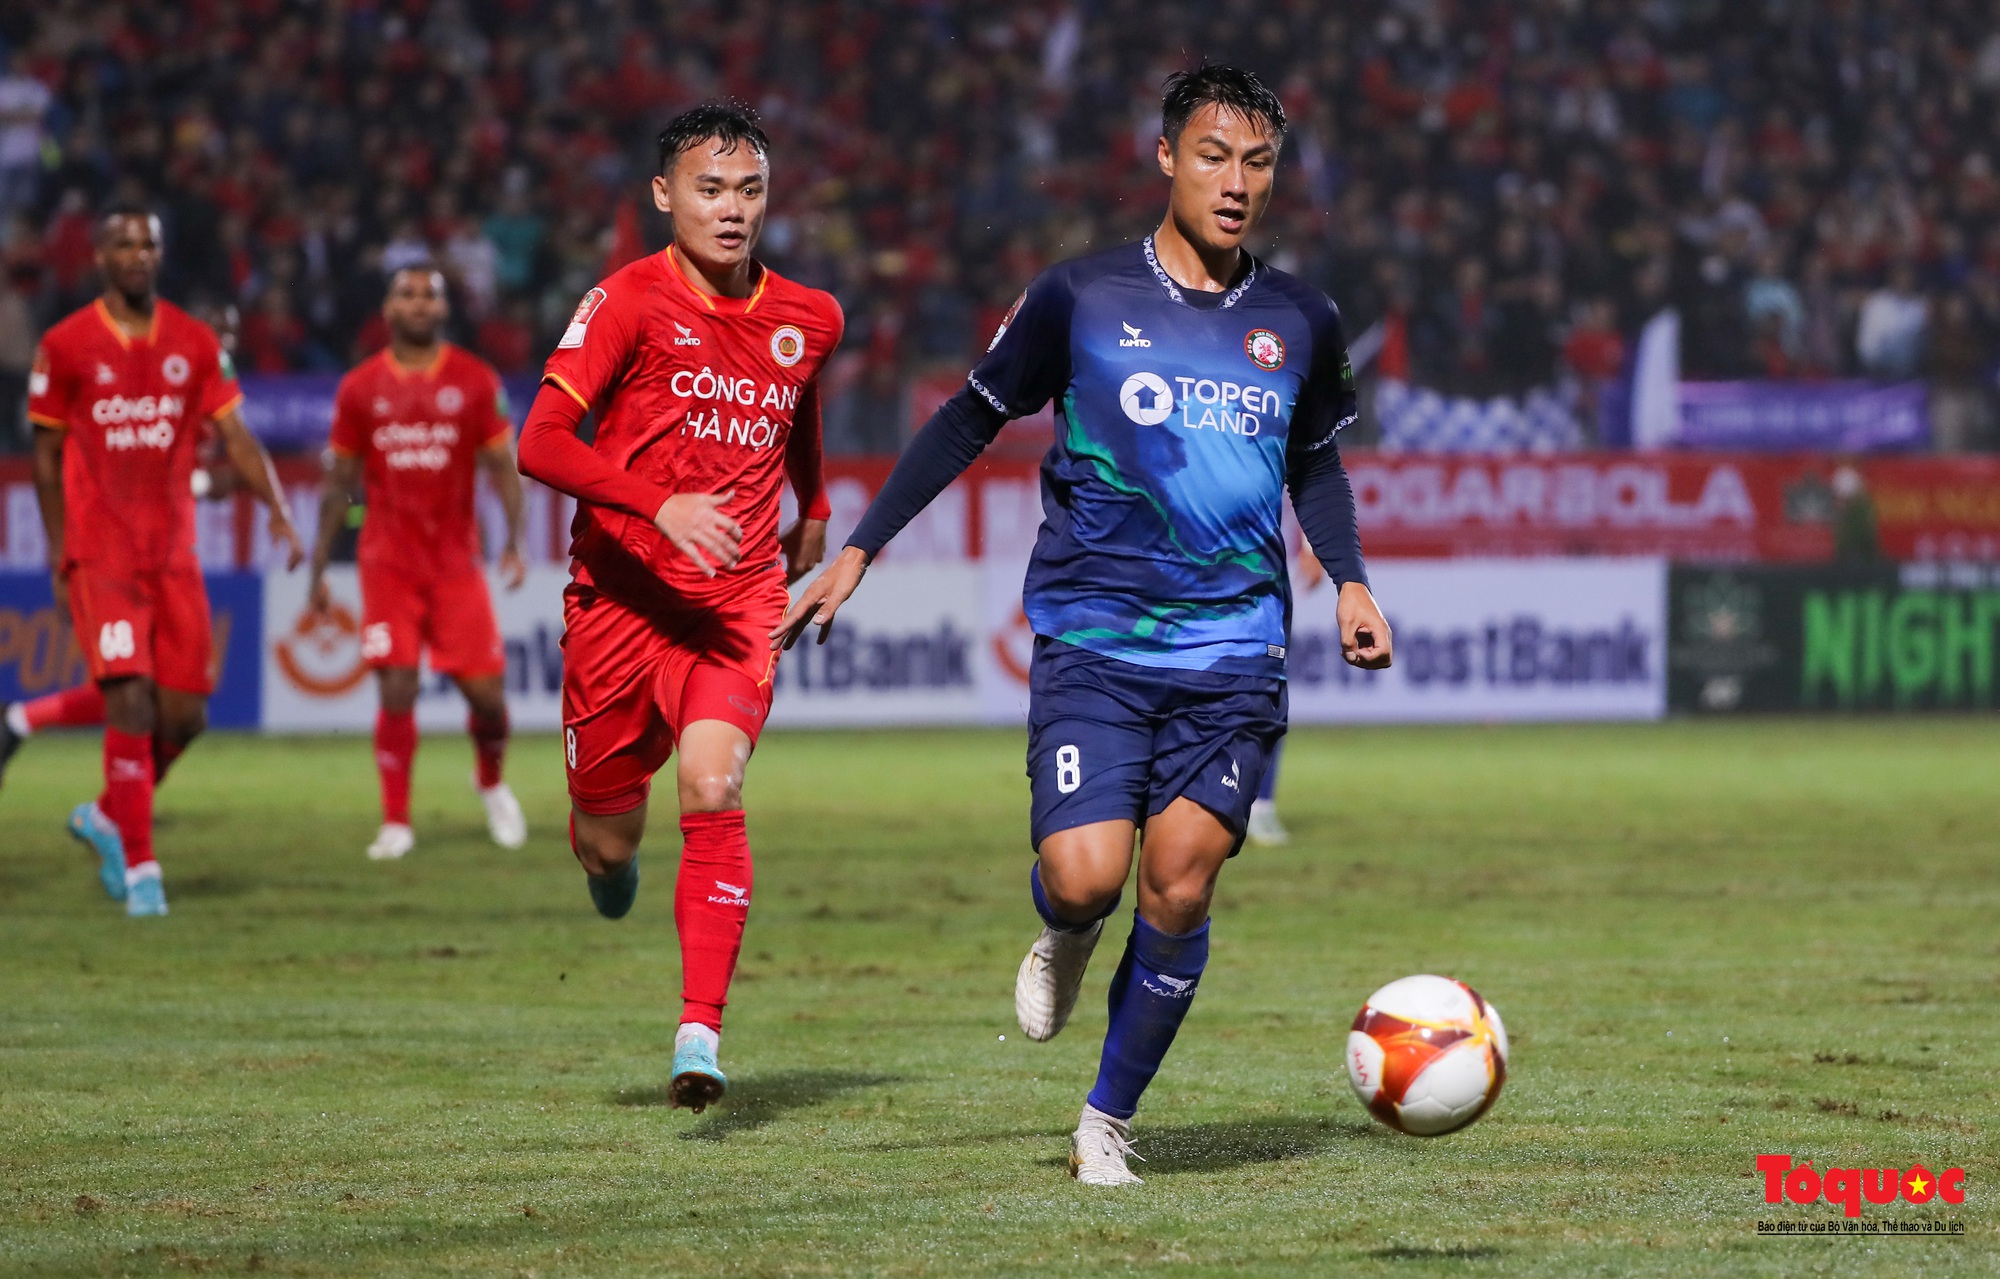 Công an Hà Nội có chiến thắng 5 sao trước Topeland Bình Định trong ngày trở lại V-League - Ảnh 14.